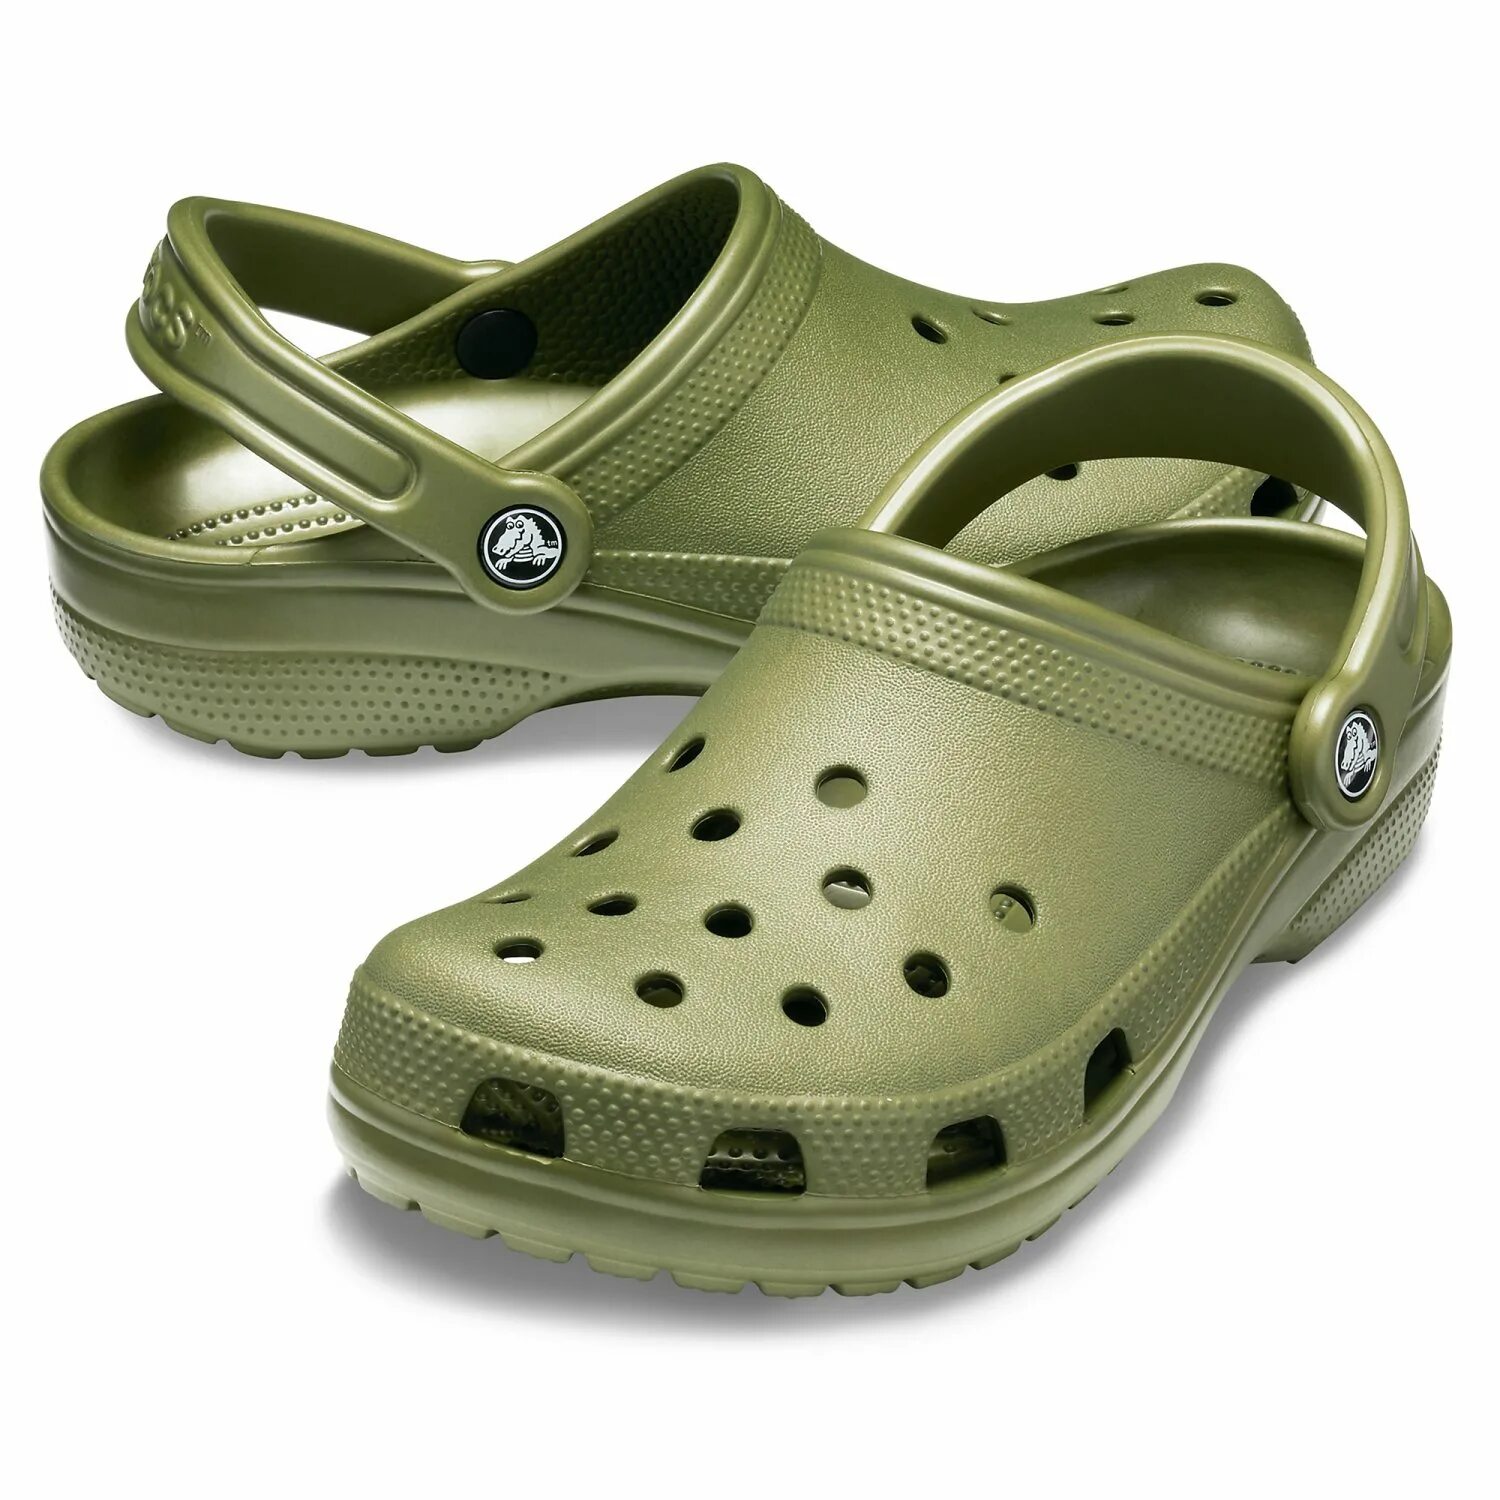 Crocs Classic Clog. Крокс хаки сабо. Сабо Classic Clog. Крокс сабо Классик. Купить crocs мужские оригинал